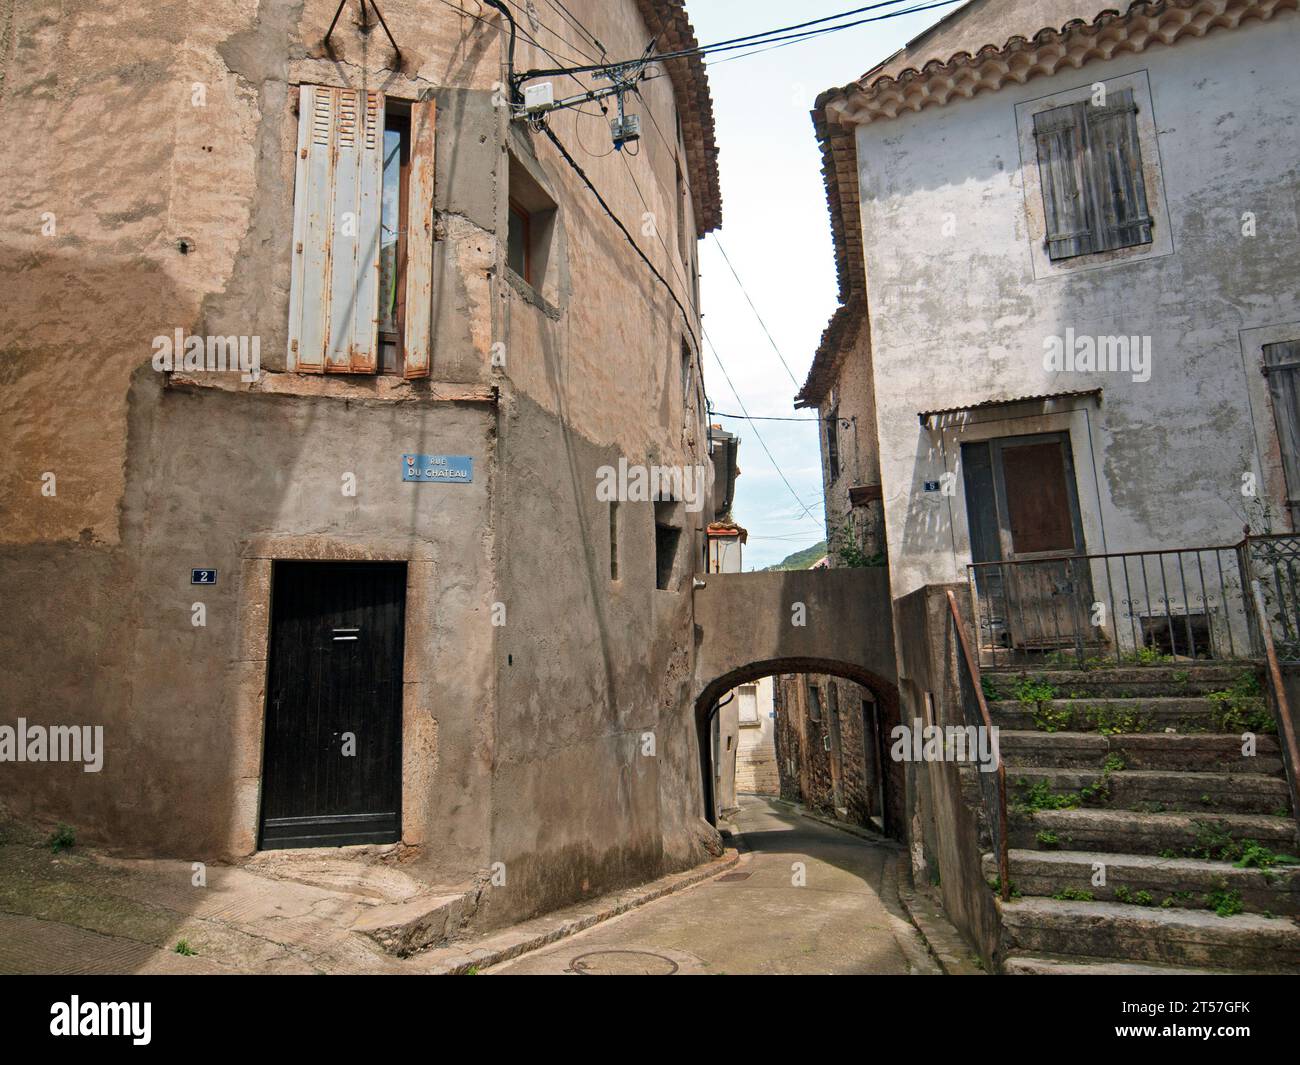 Le joli petit village de Vieussan dans le sud de la France Banque D'Images